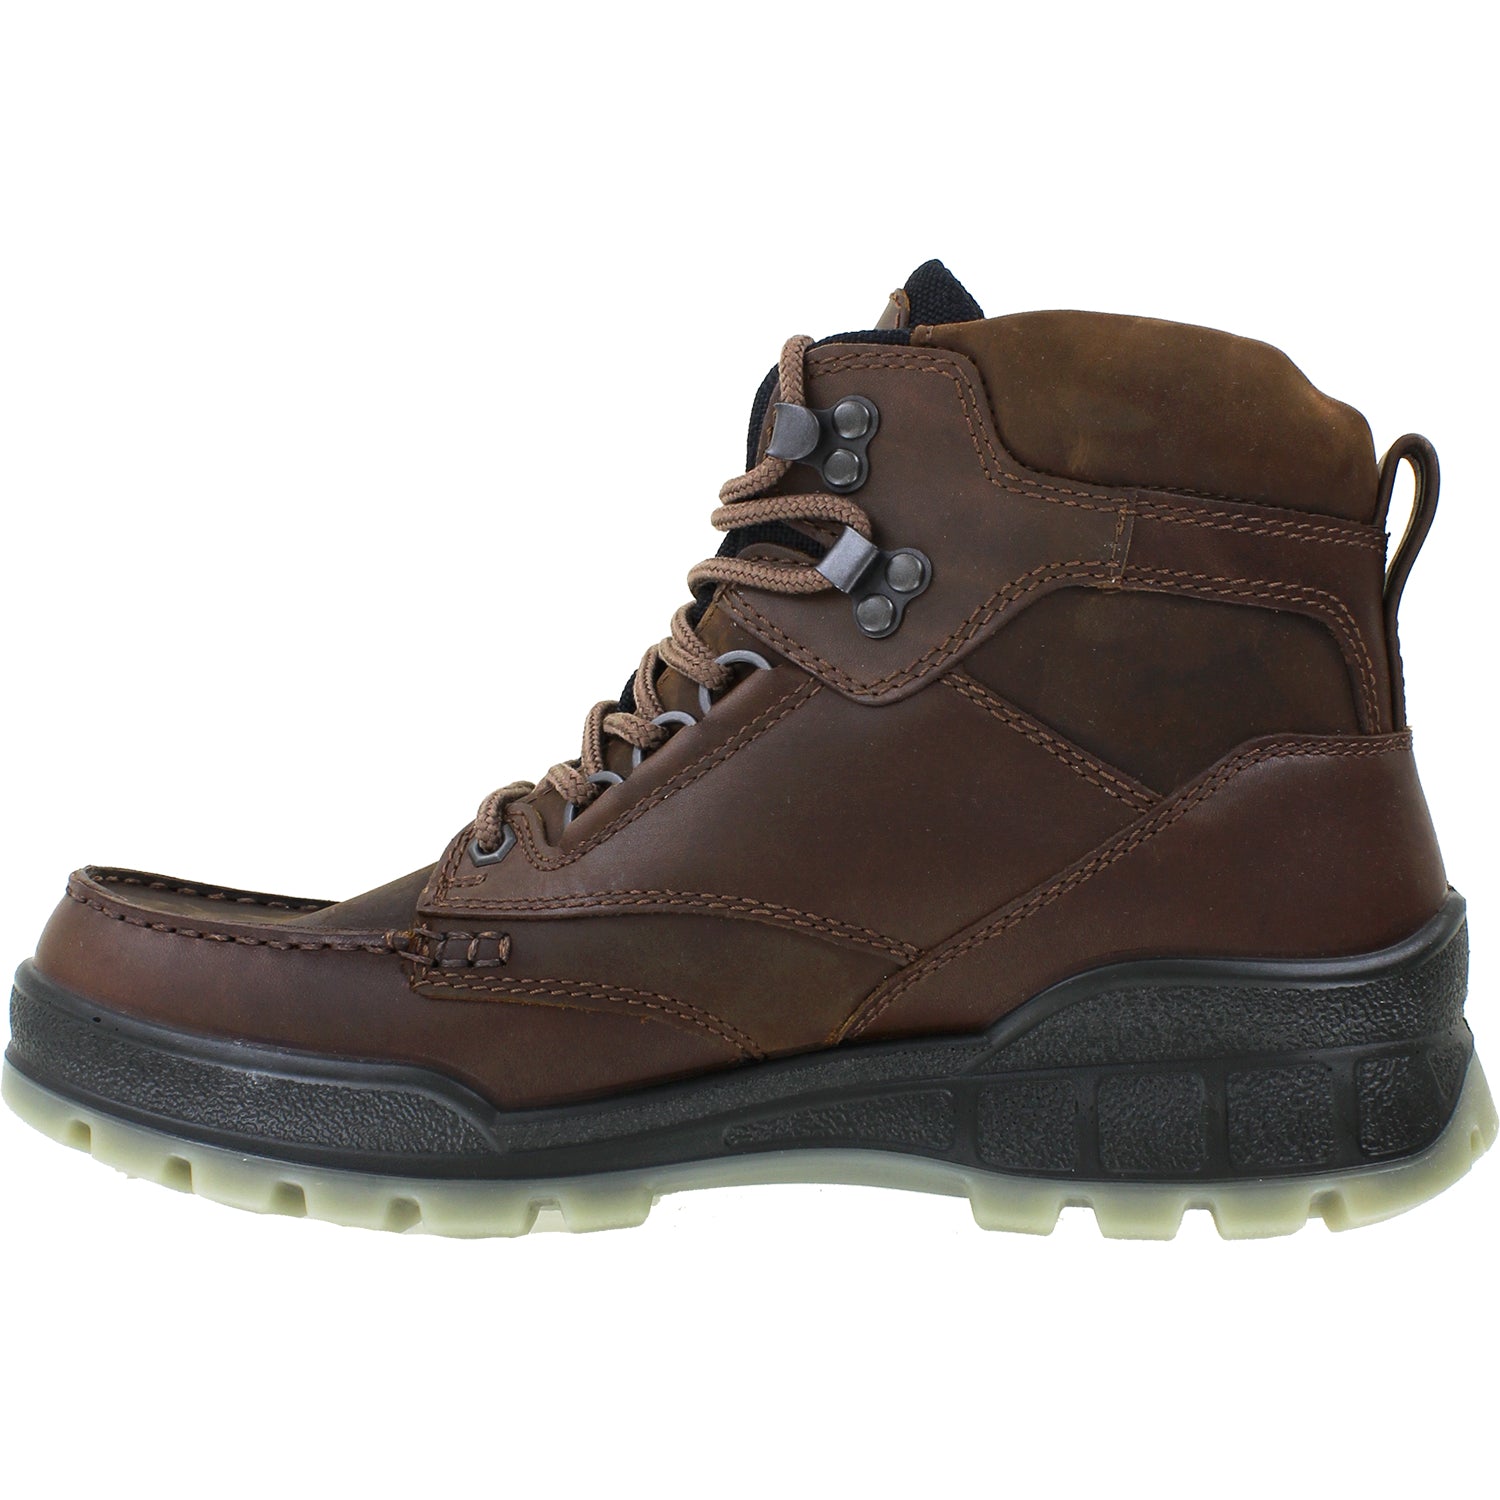 skrive Afgang bundt Ecco Track 25 High GTX Bison | Men's Hiking Boots | Footwear etc.